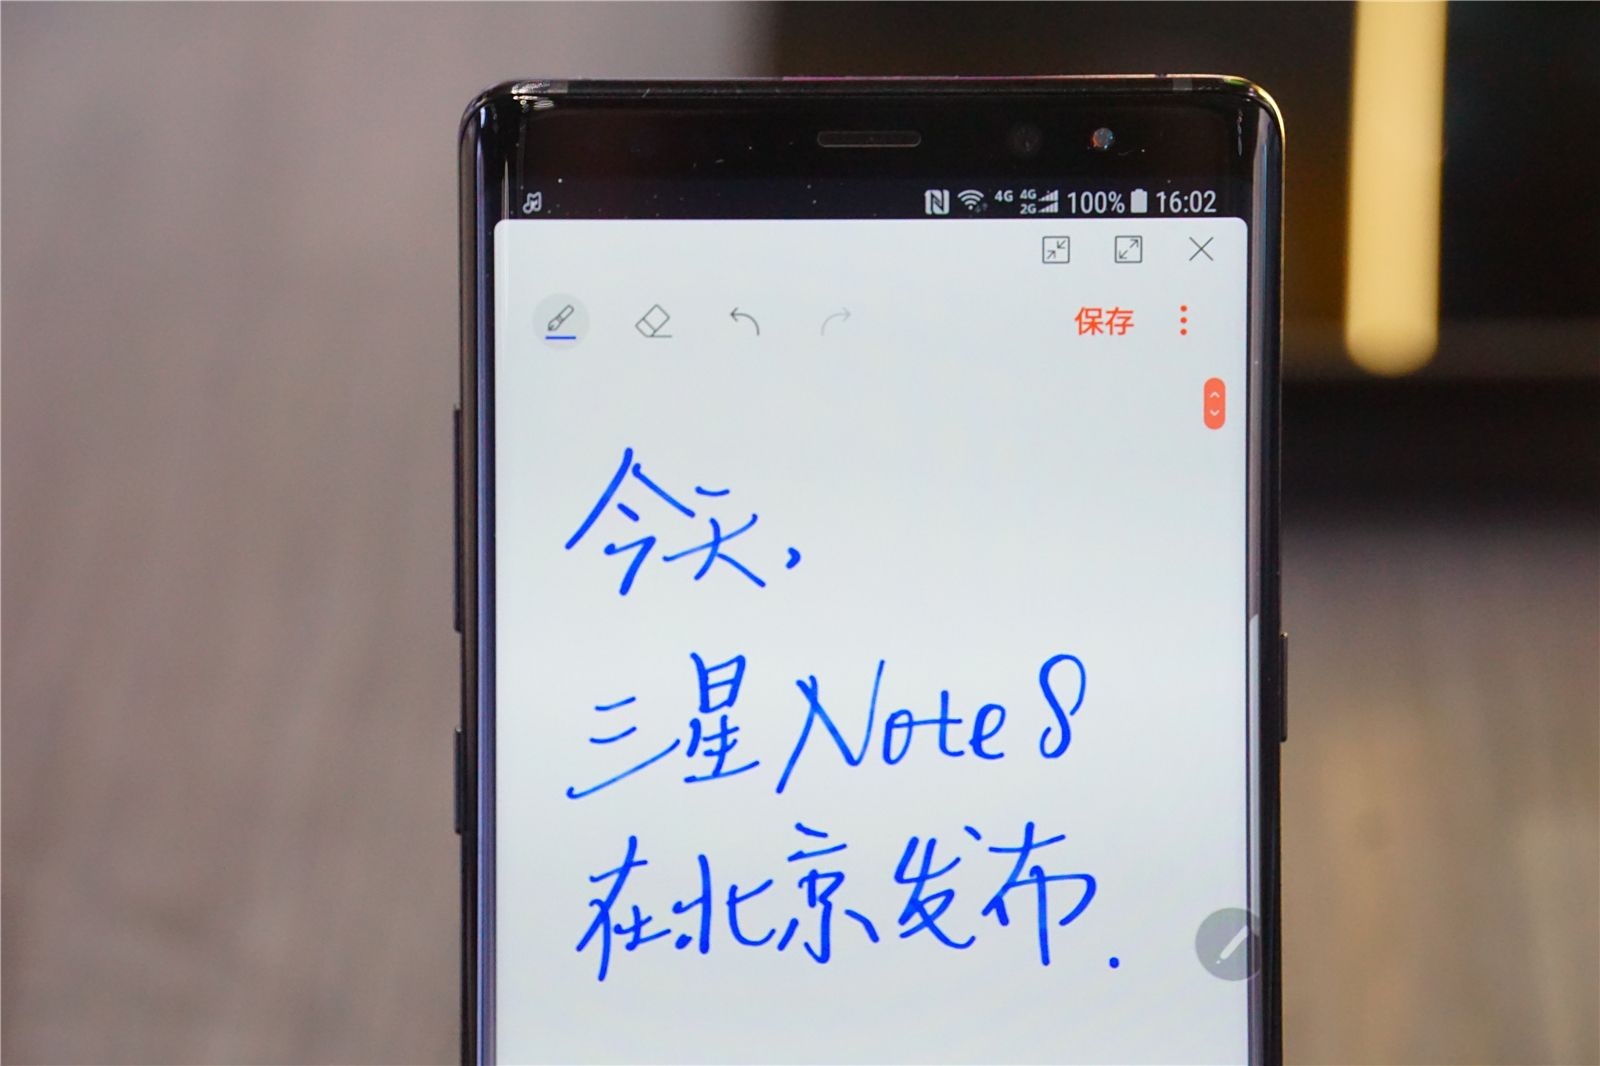 三星 Note 8 上手:暴强屏幕搭配 S Pen,变焦双摄